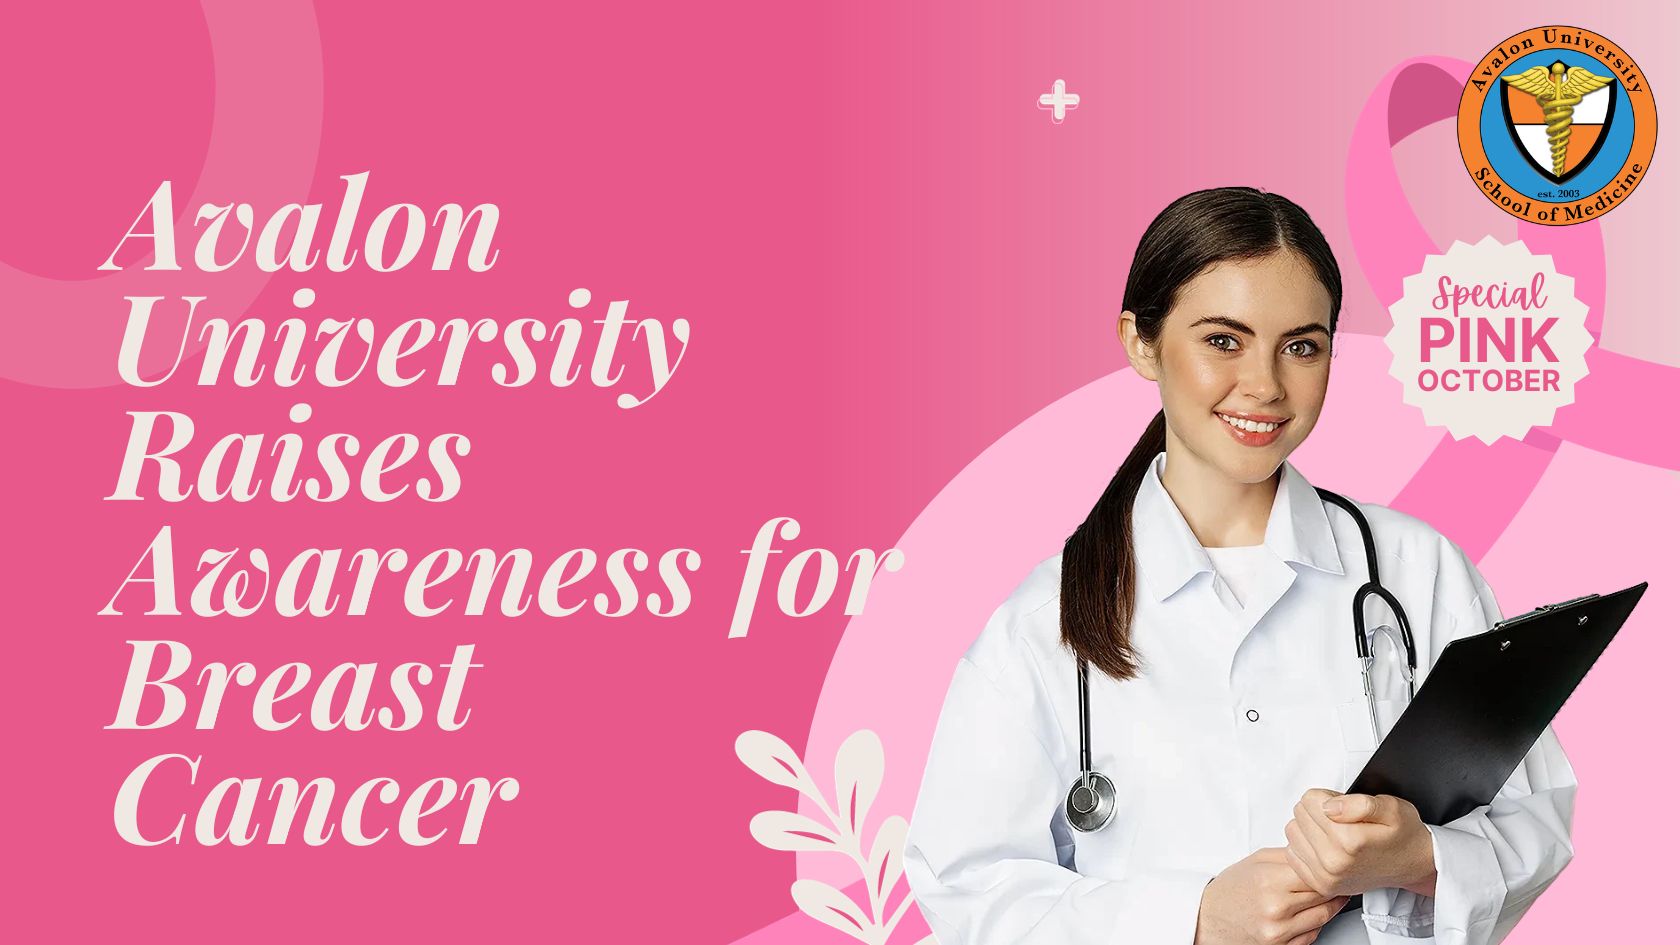 Avalon University Raises Awareness for Breast Cancer